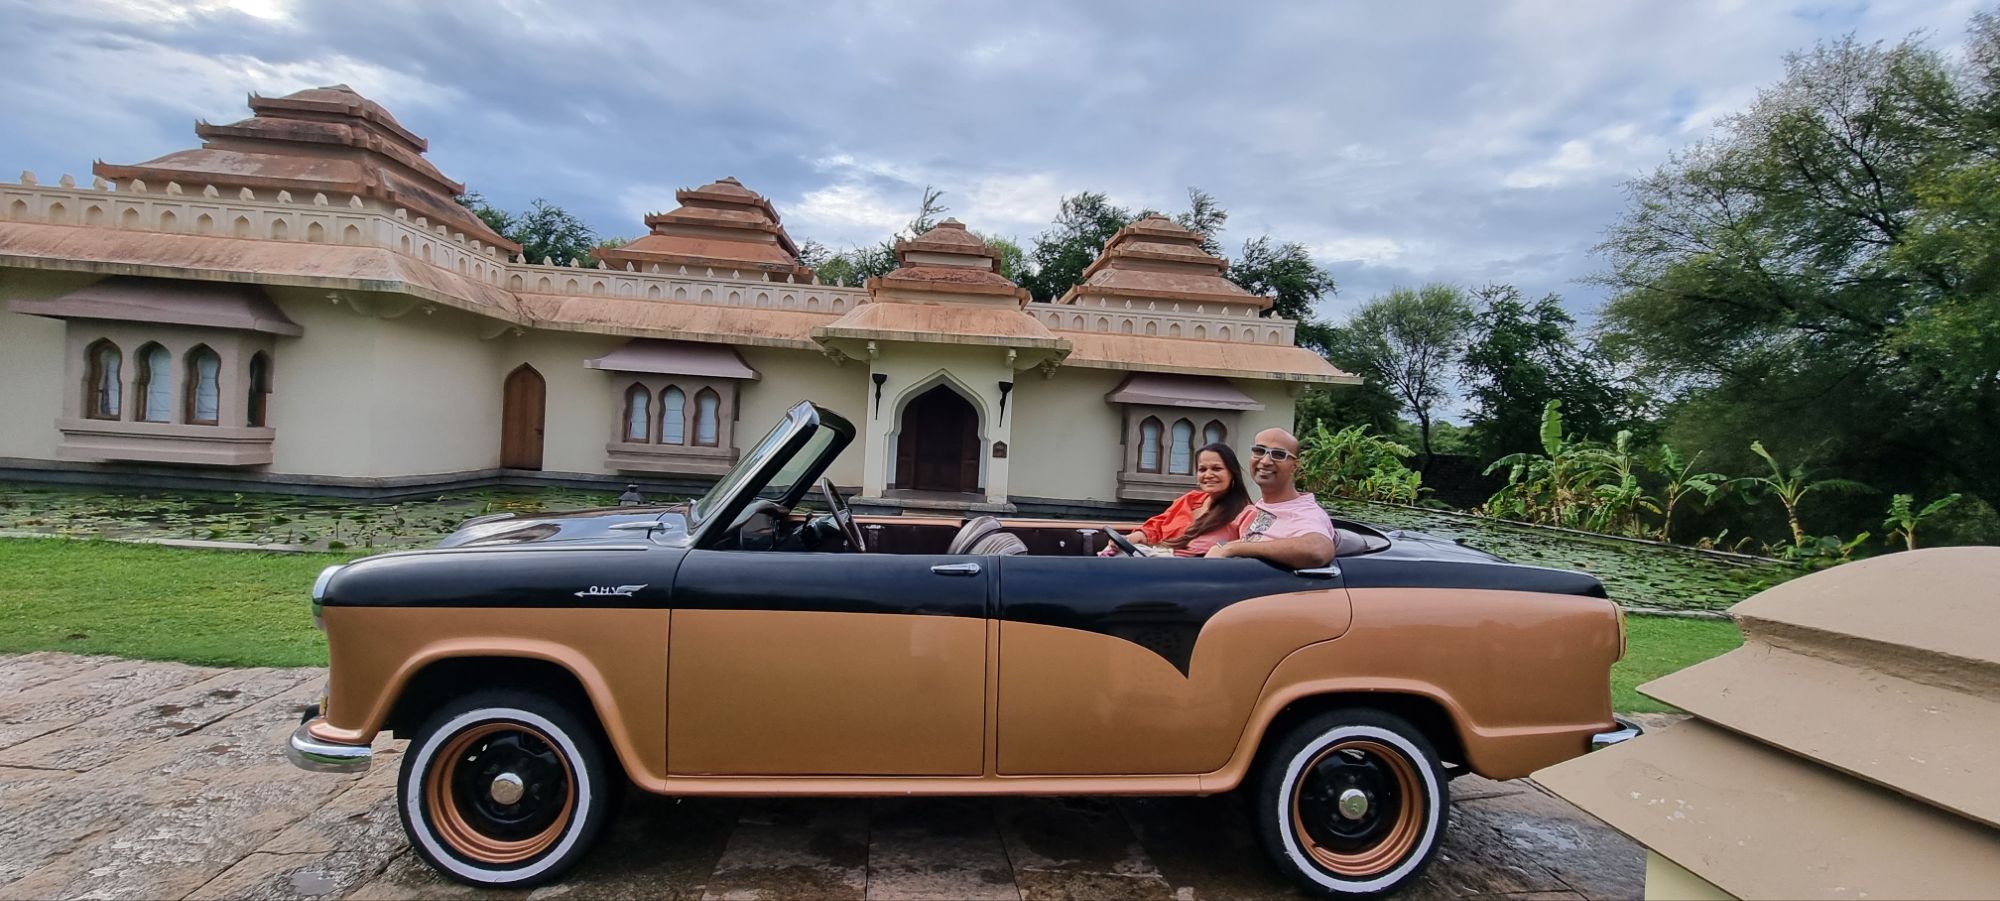 A ride in a vintage Ambassador.